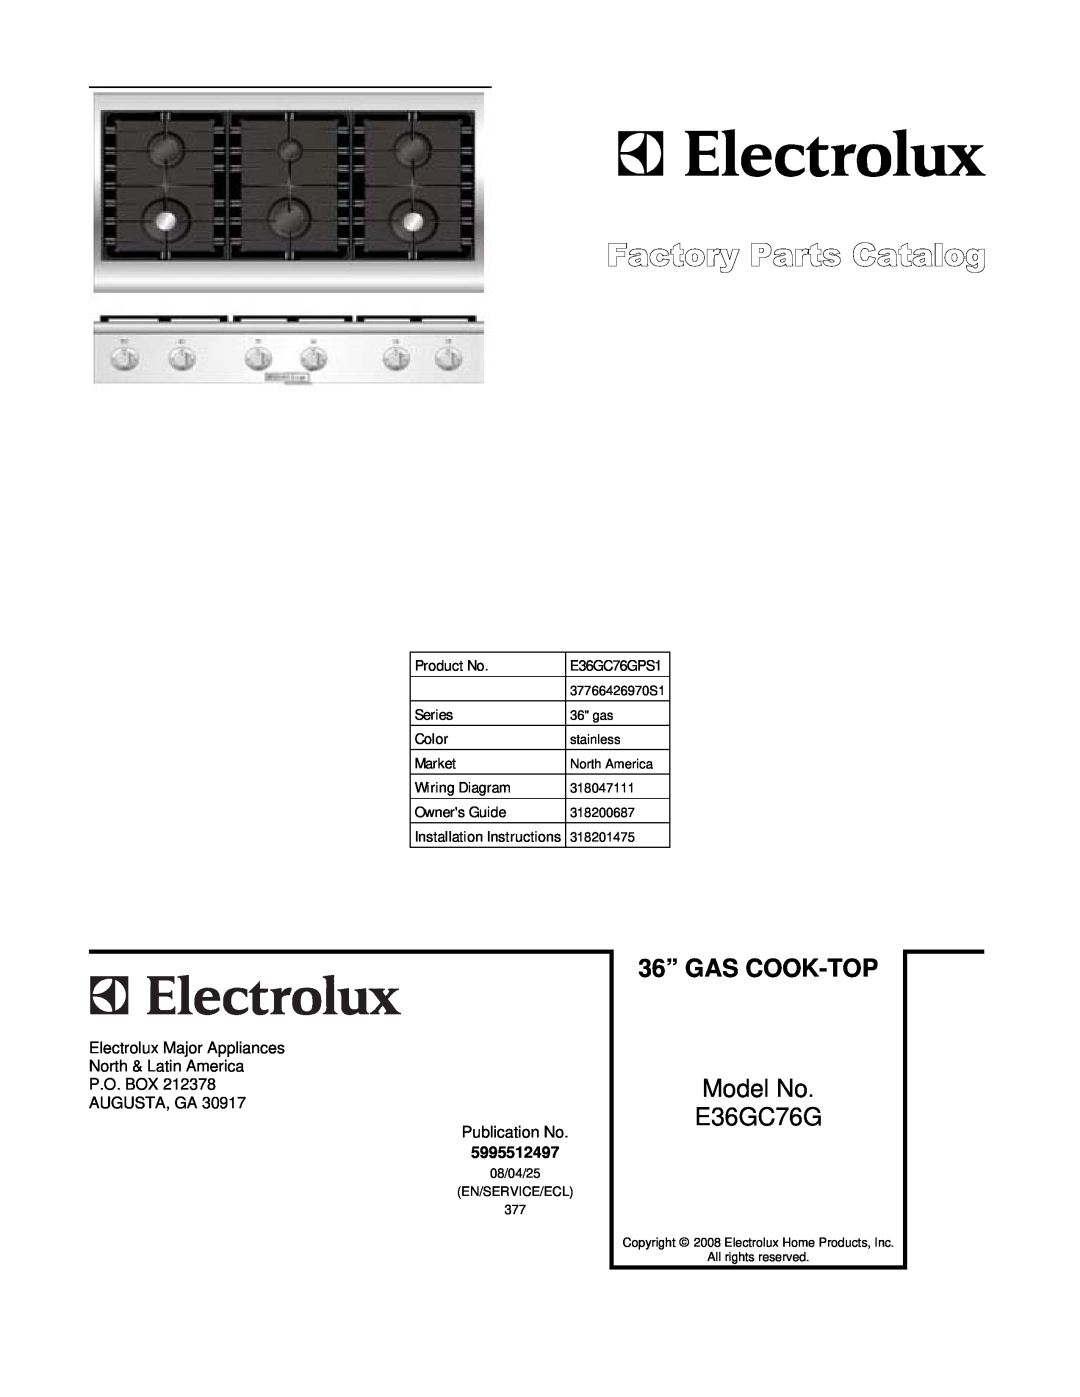 Electrolux E36GC76GPS1, 37766426970S1 installation instructions 36” GAS COOK-TOP, Model No E36GC76G 